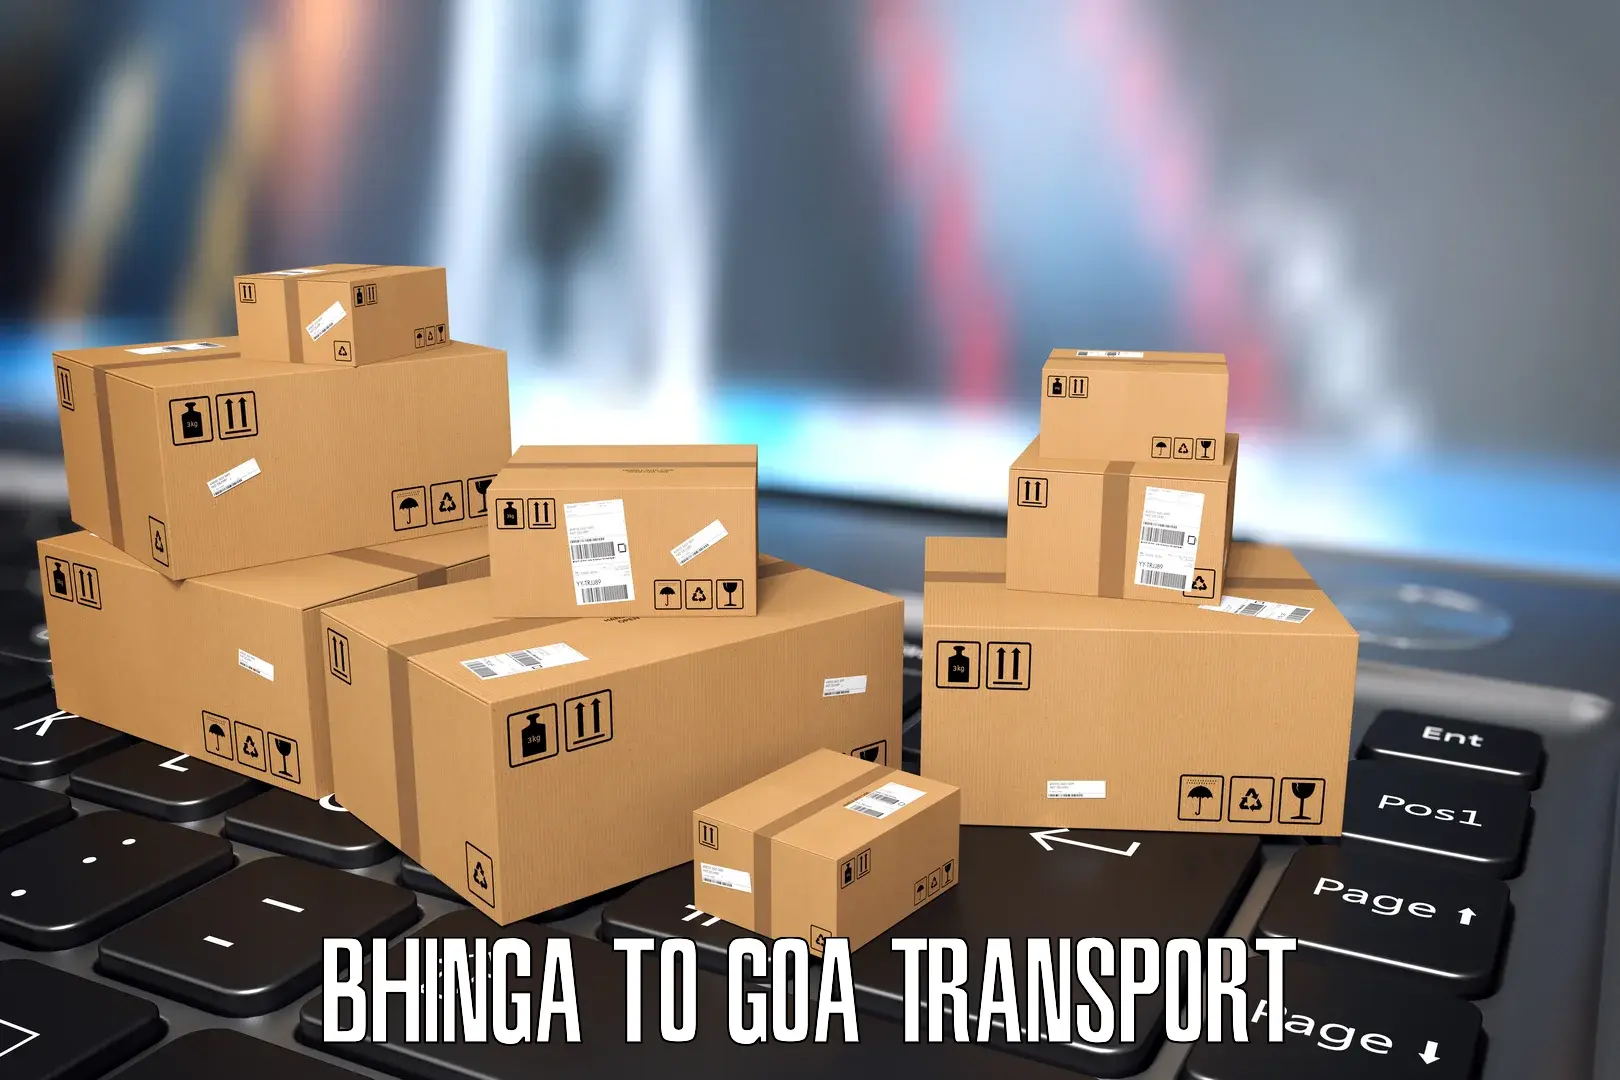 Two wheeler parcel service Bhinga to Panjim